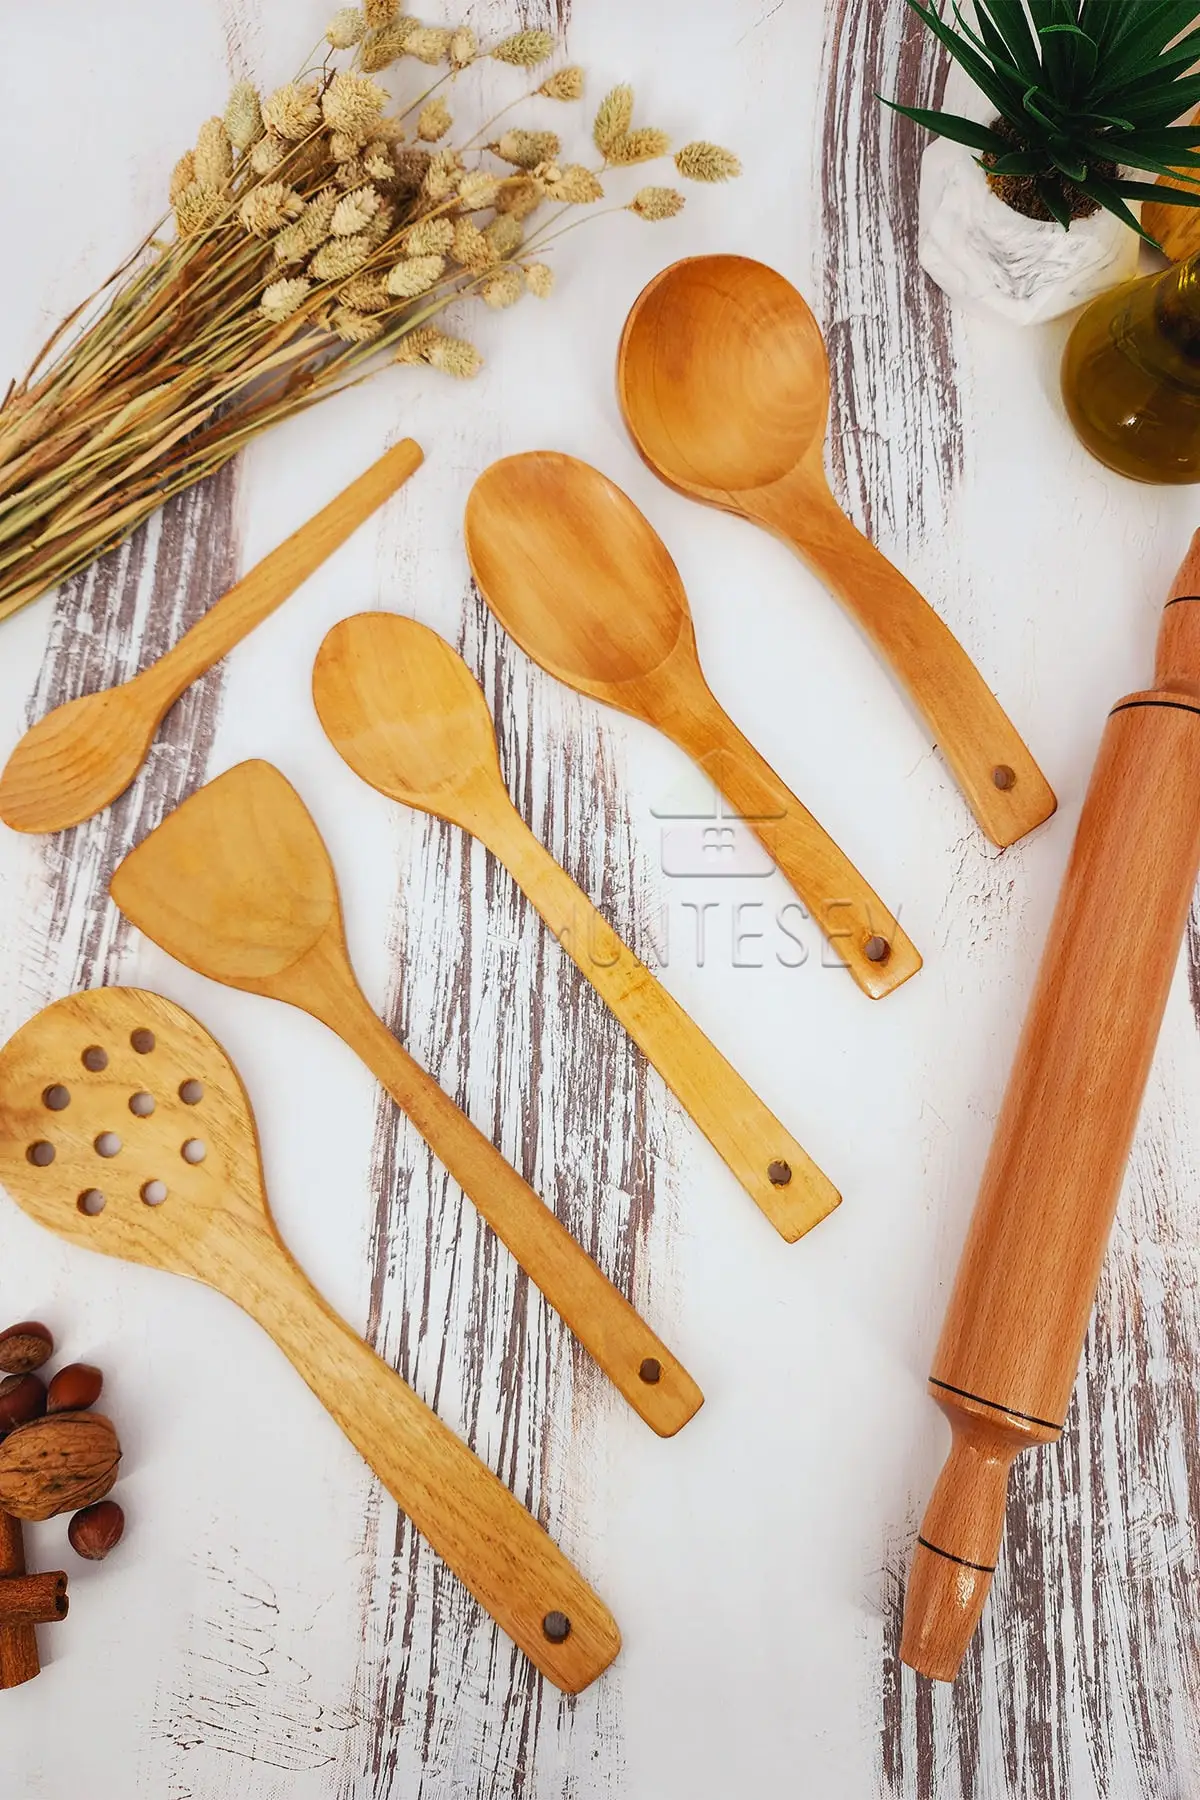 

Набор деревянных кухонных ложек из 7 предметов, бук, ящик и бамбук